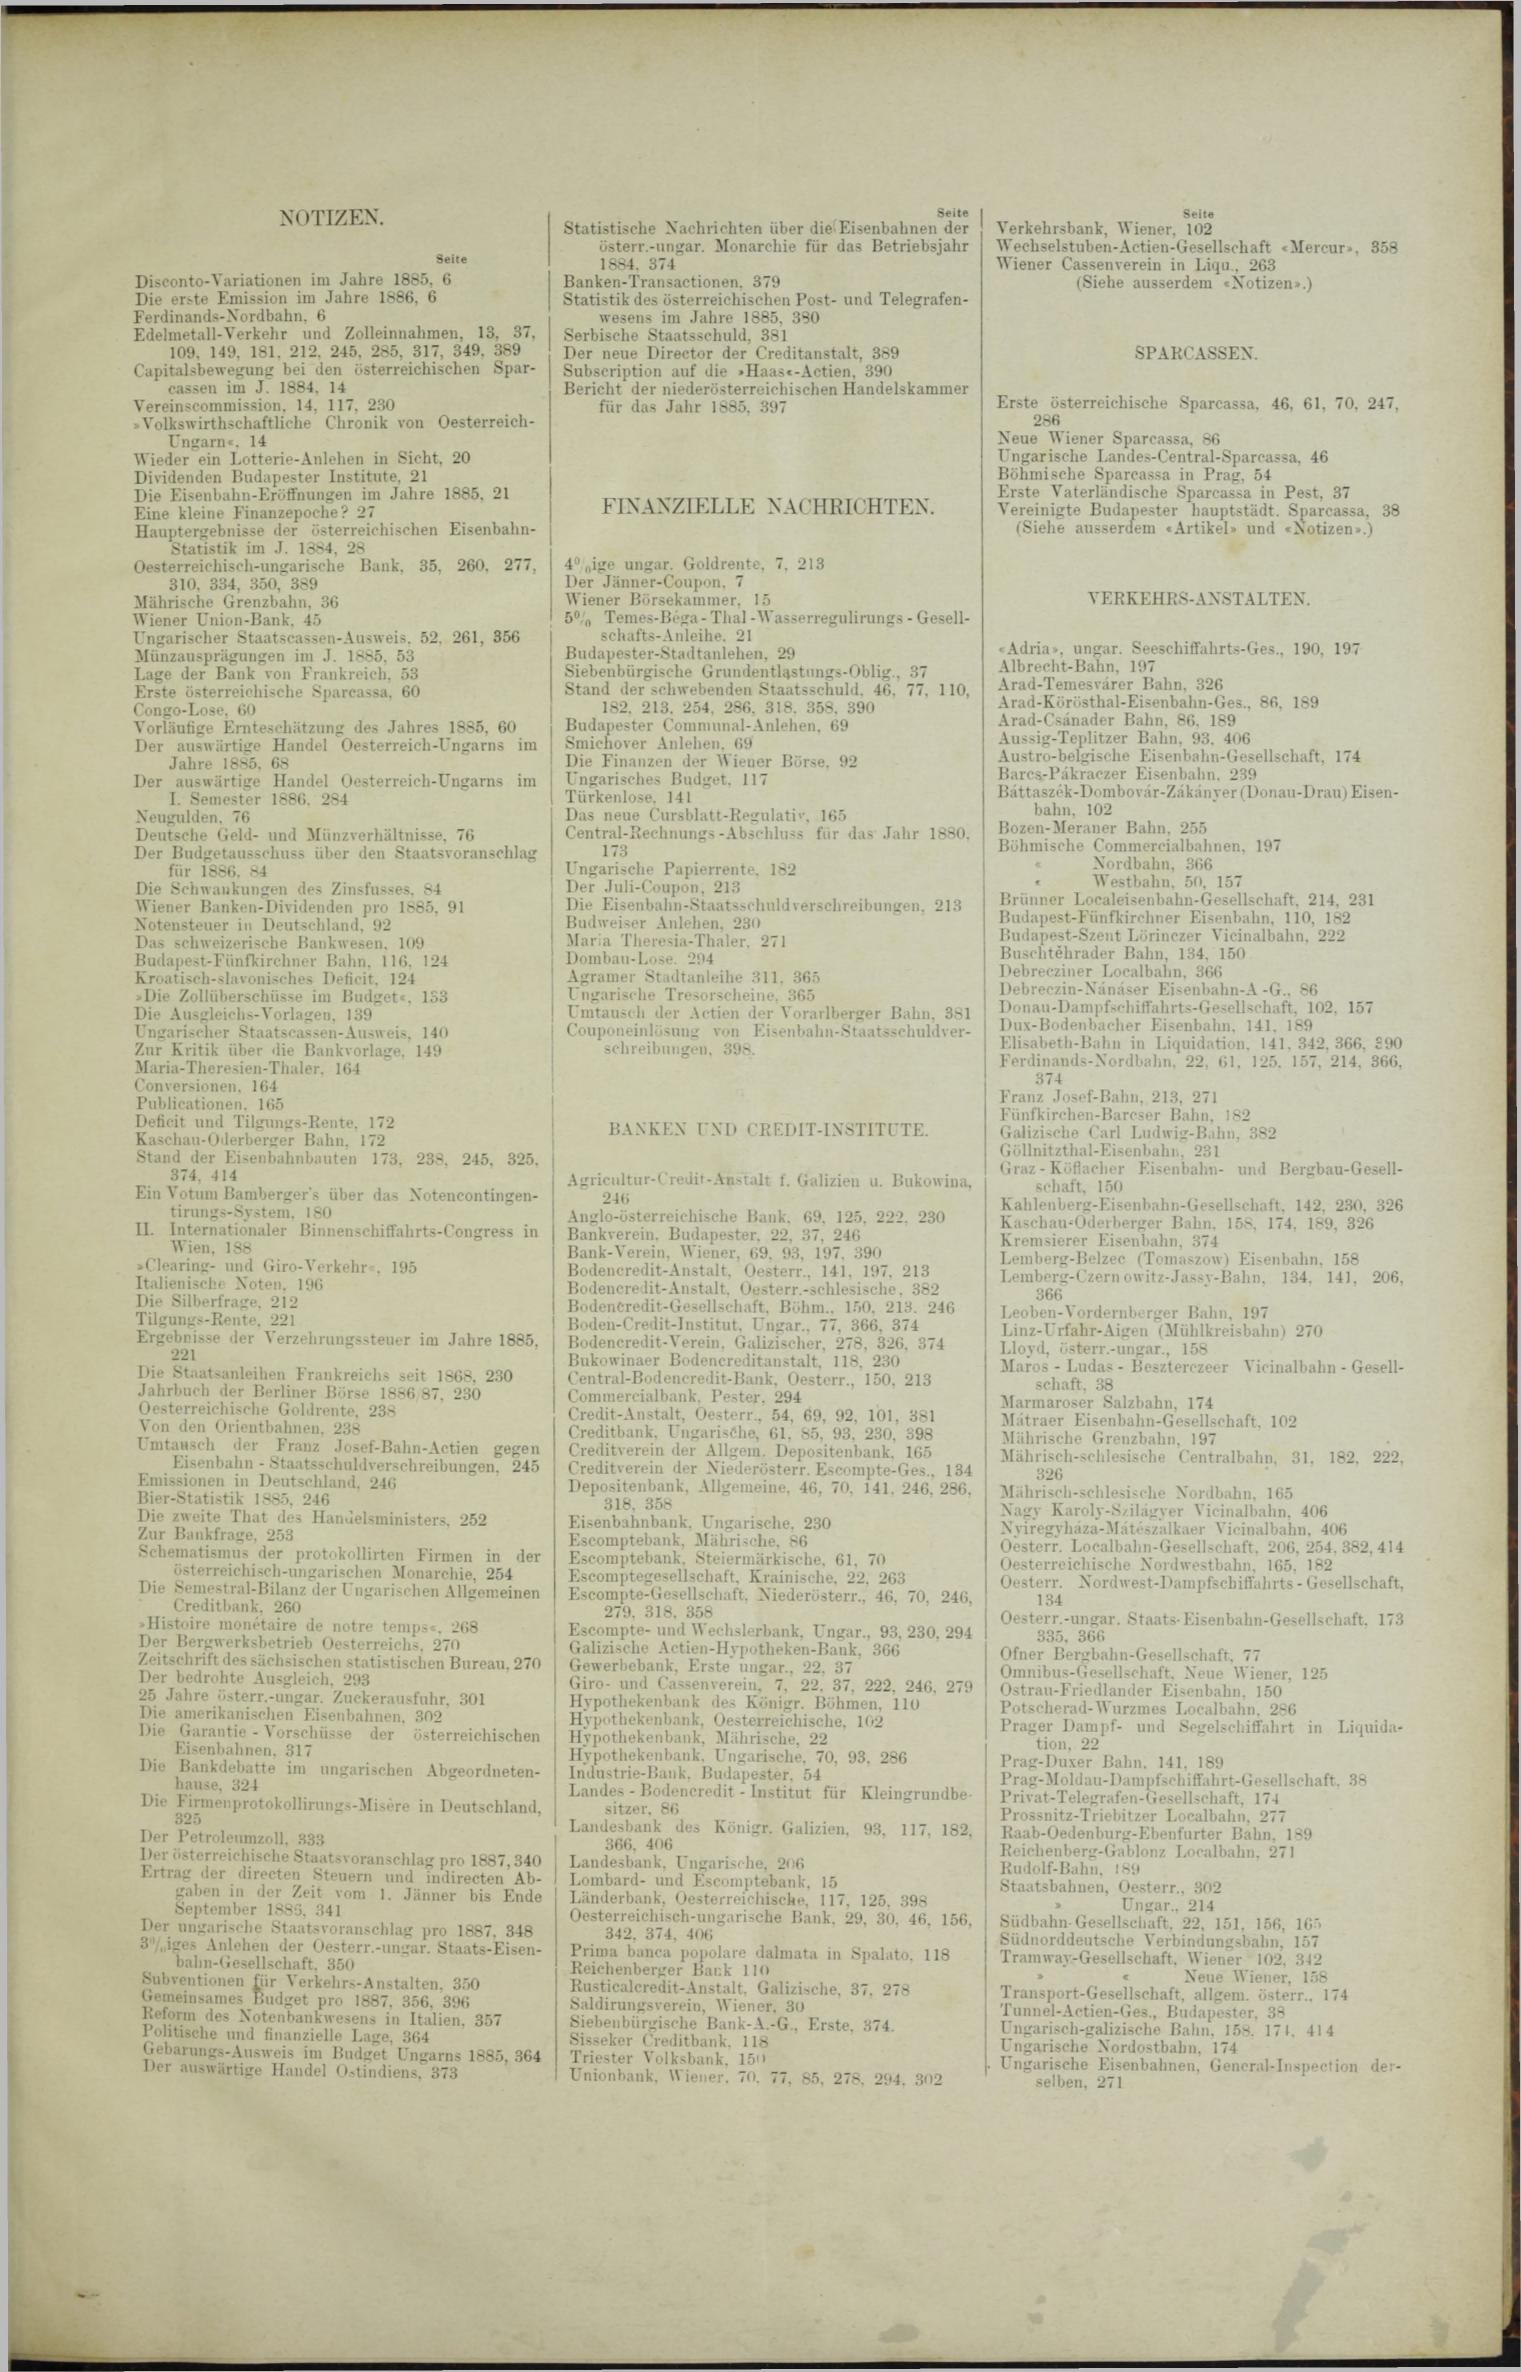 Der Tresor 09.09.1886 - Seite 11